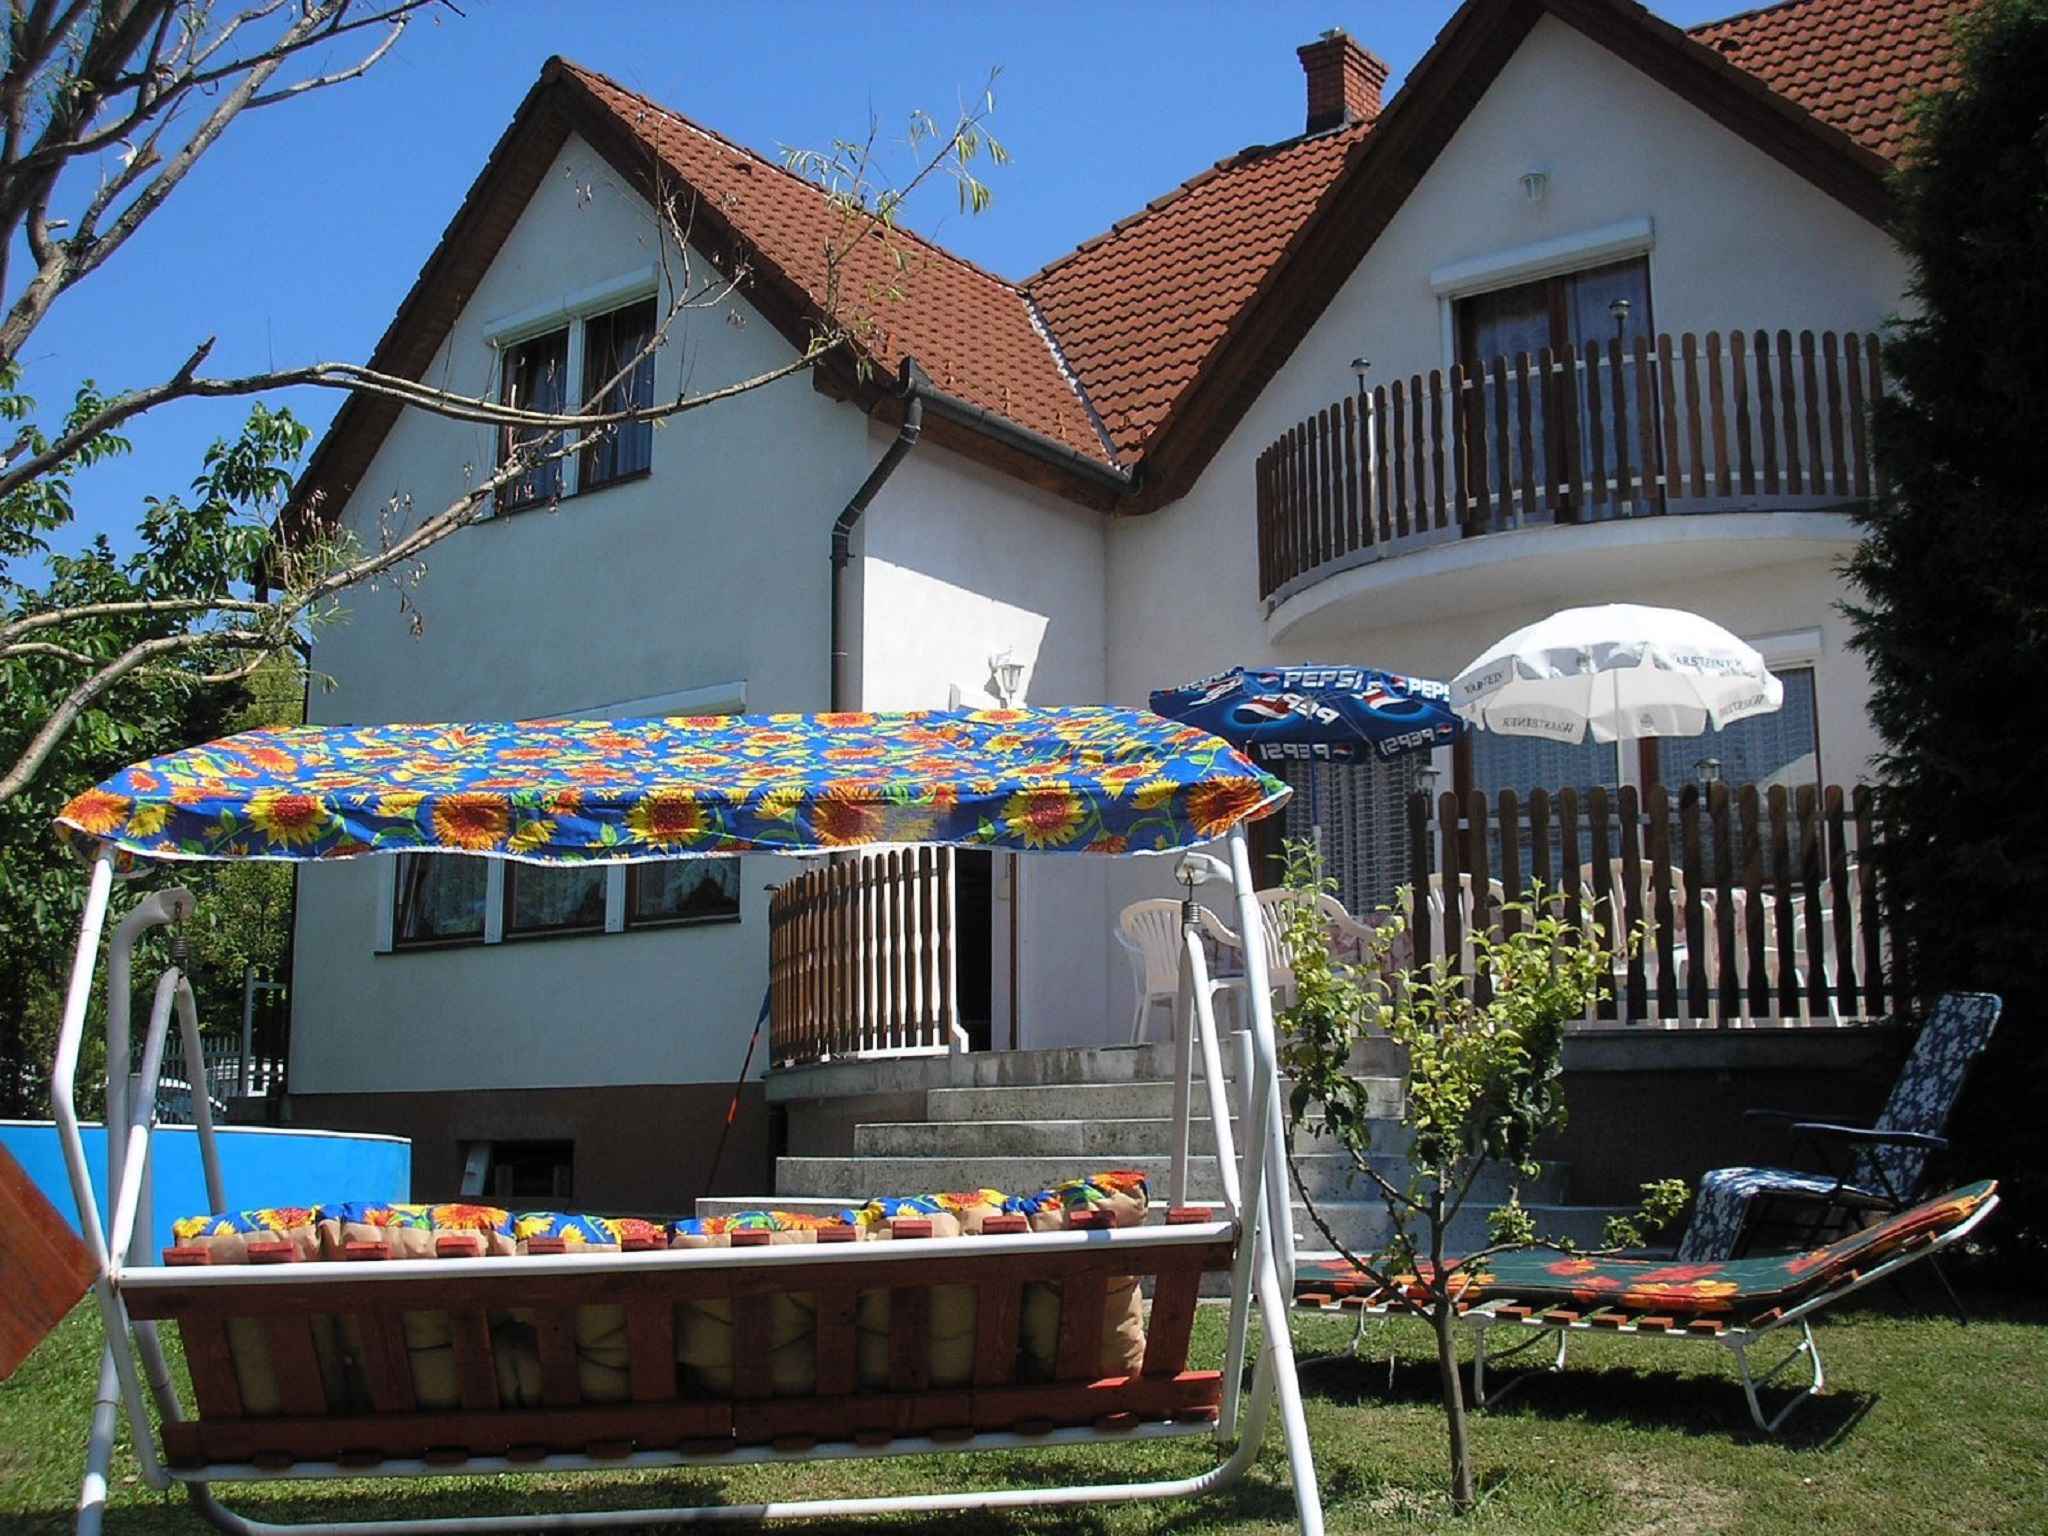 Ferienhaus mit Klimaanlage und Gartenpavillon Ferienhaus in Ungarn